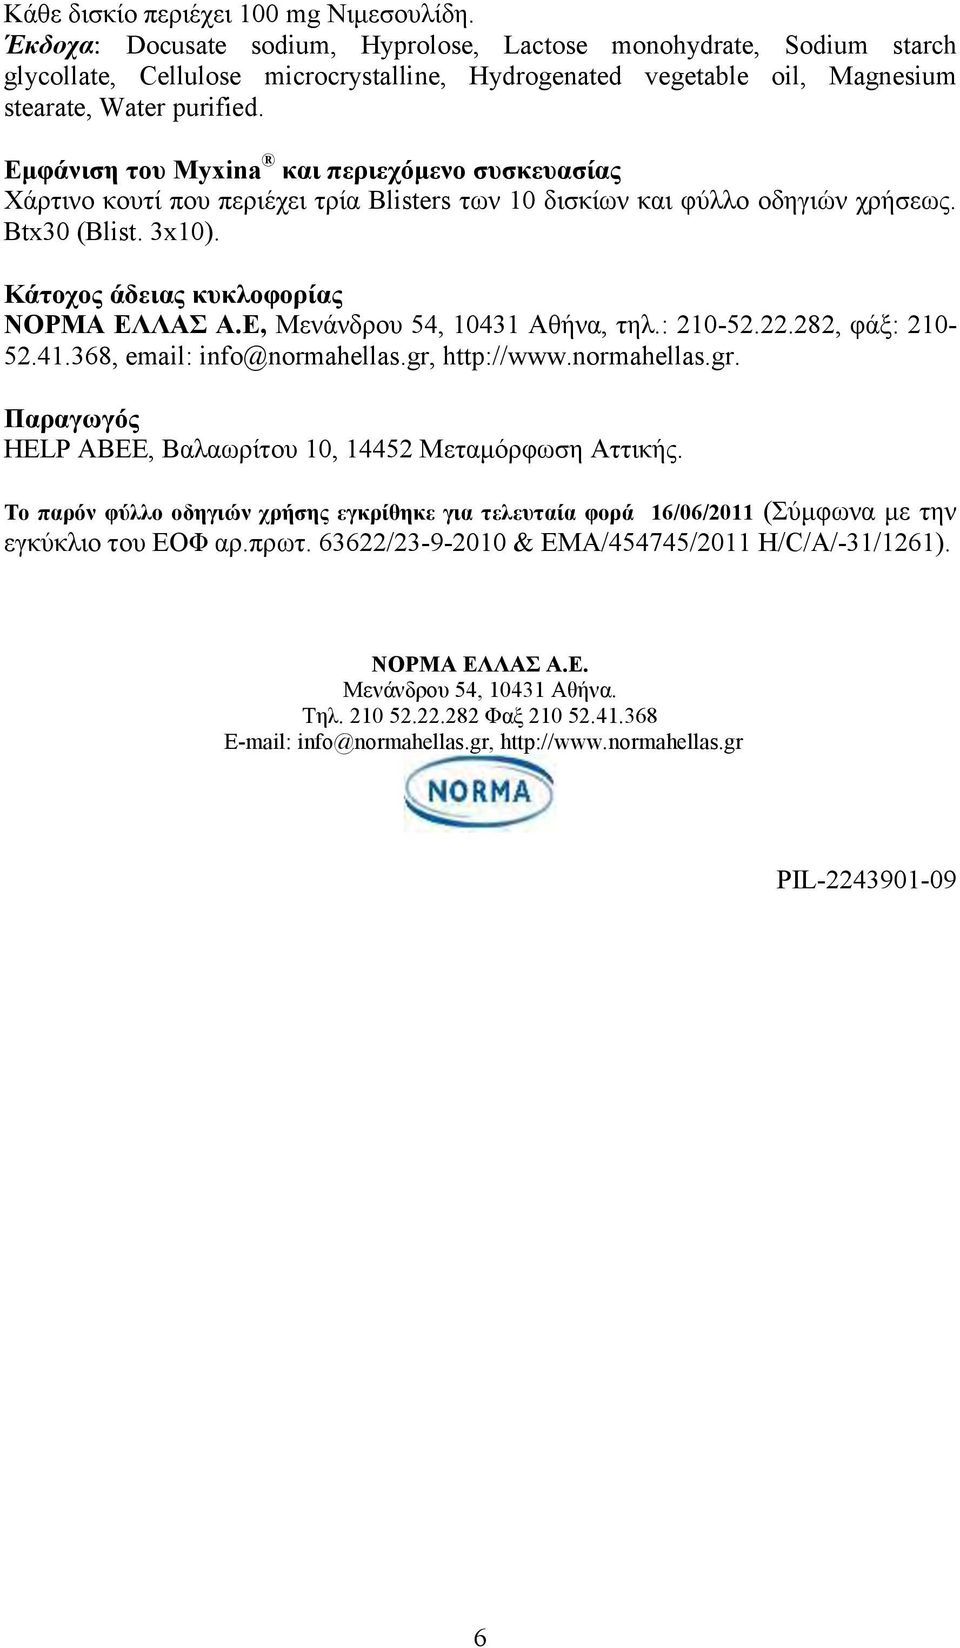 Εμφάνιση του Myxina και περιεχόμενο συσκευασίας Χάρτινο κουτί που περιέχει τρία Blisters των 10 δισκίων και φύλλο οδηγιών χρήσεως. Βtx30 (Blist. 3x10). Κάτοχος άδειας κυκλοφορίας ΝΟΡΜΑ ΕΛΛΑΣ Α.